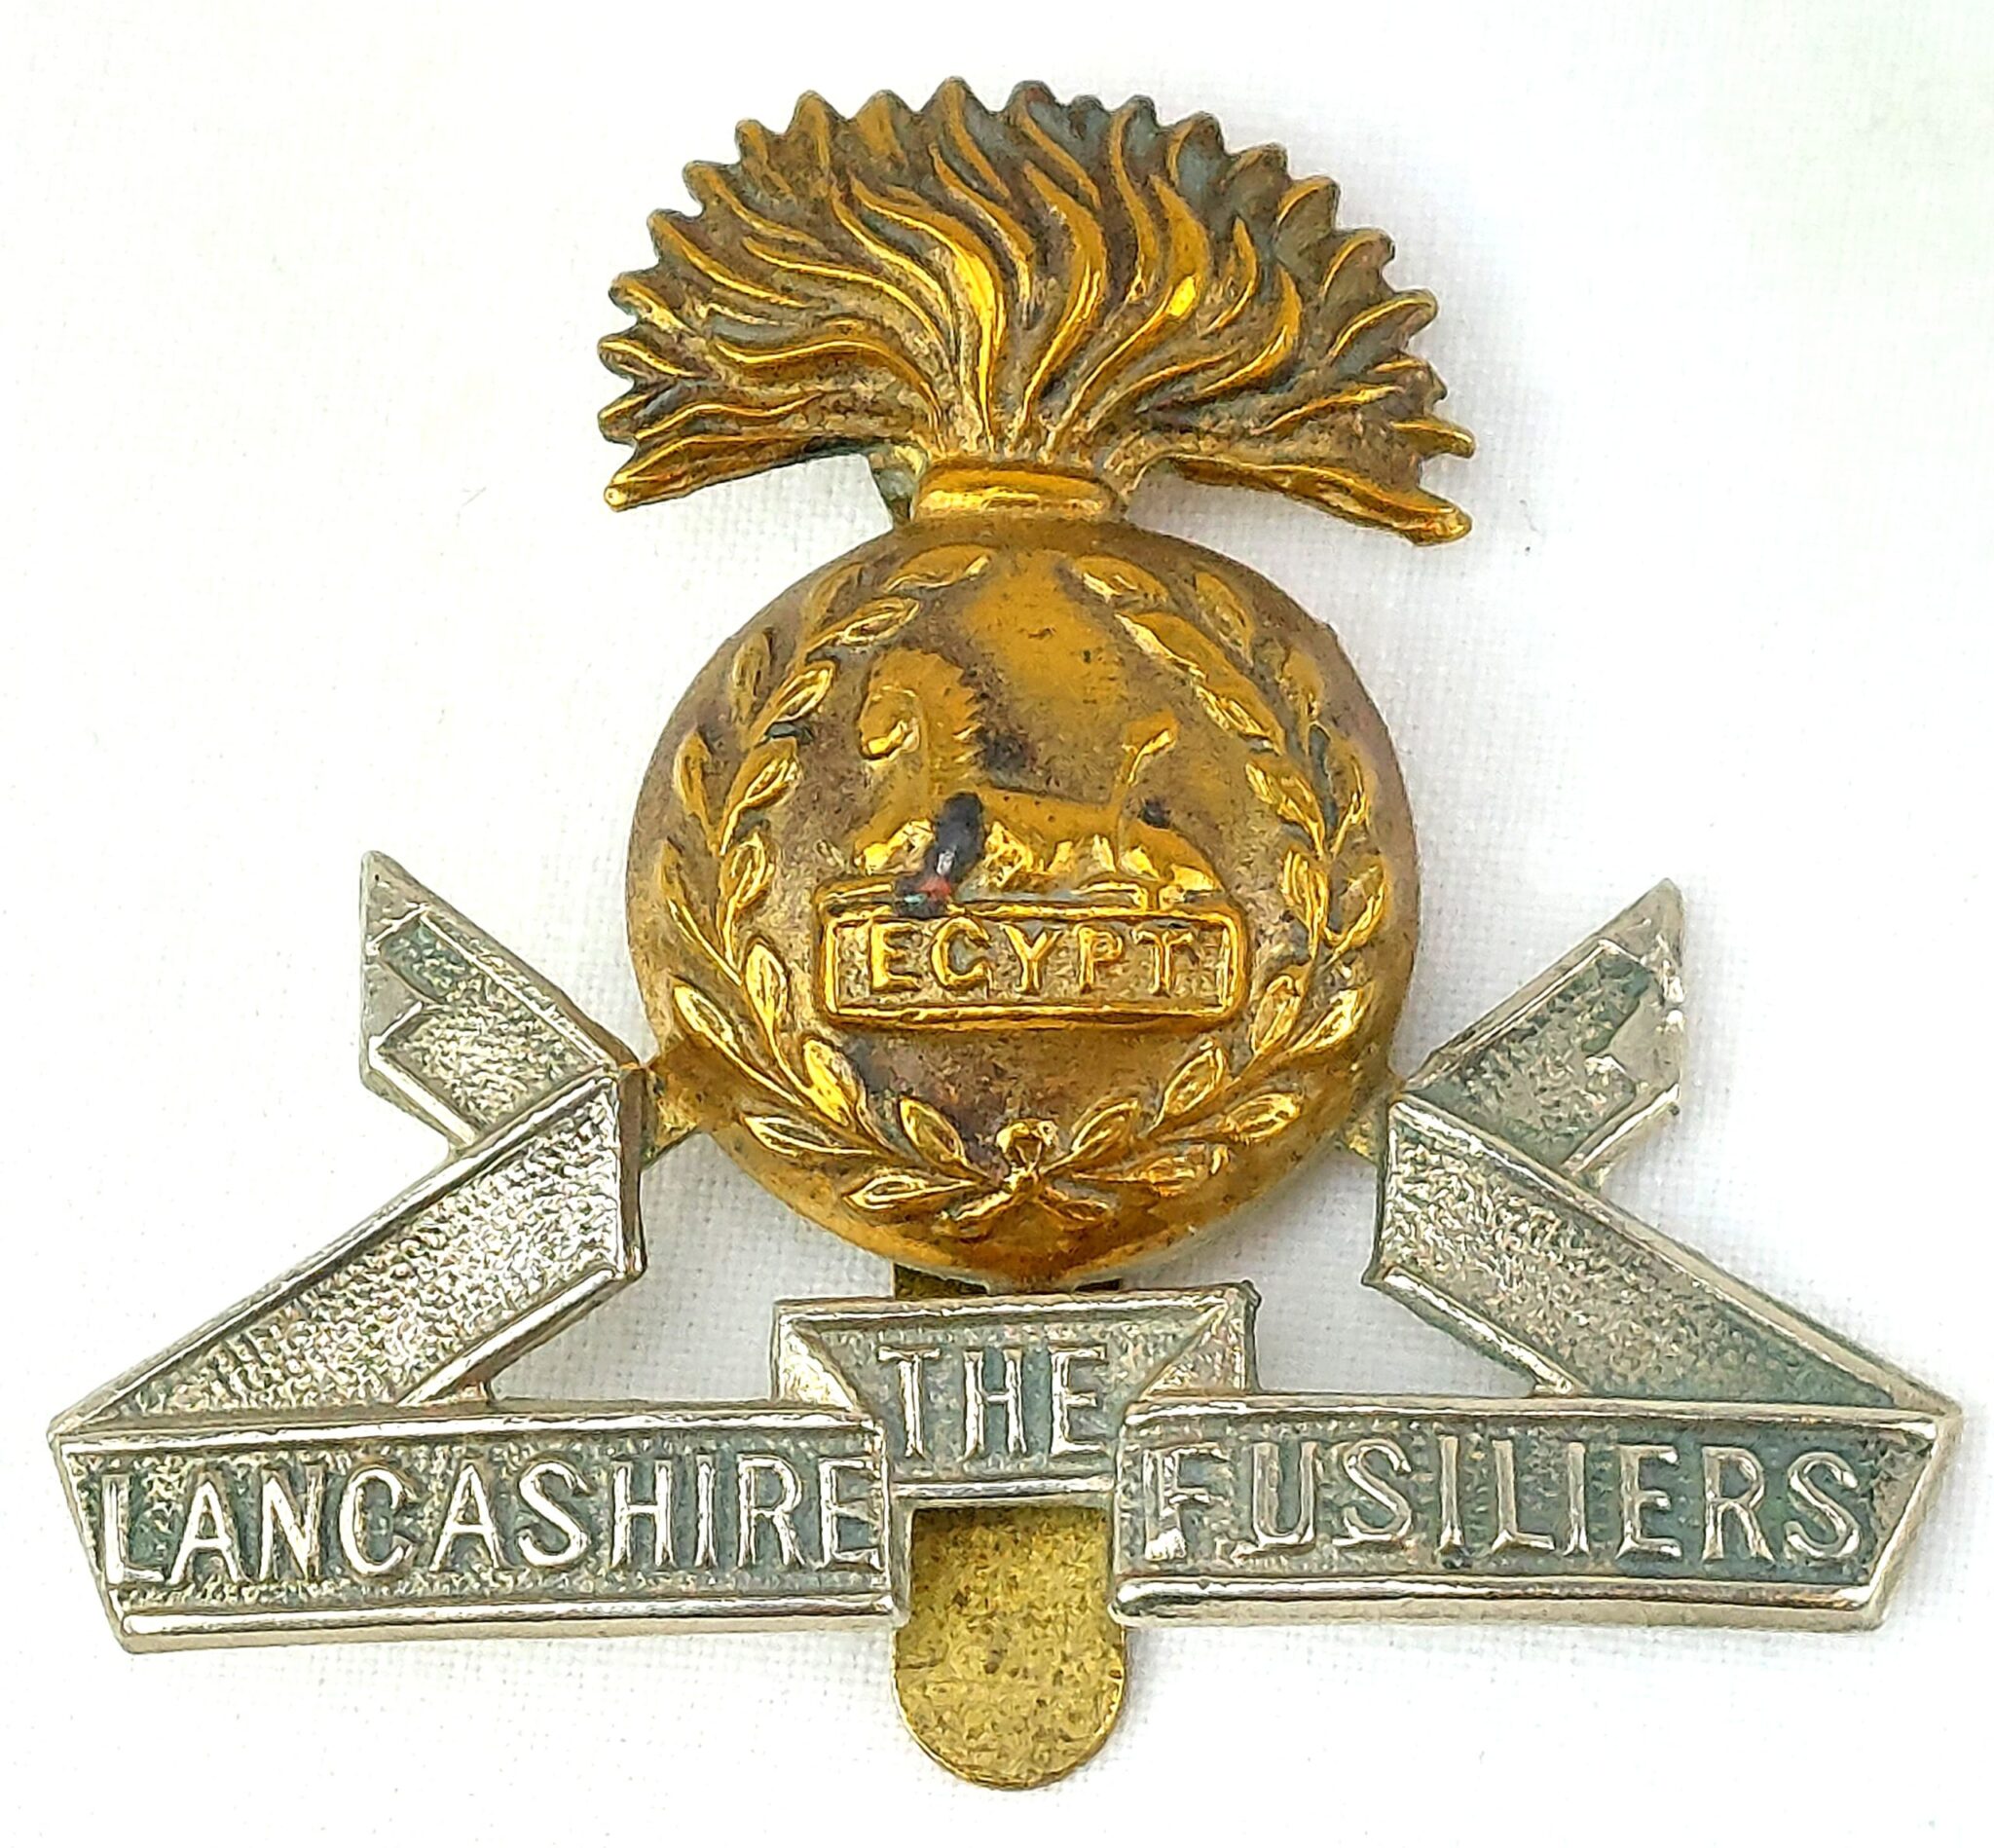 British, Lancashire Fusiliers, Bi-metal, Cap Badge - Sally Antiques